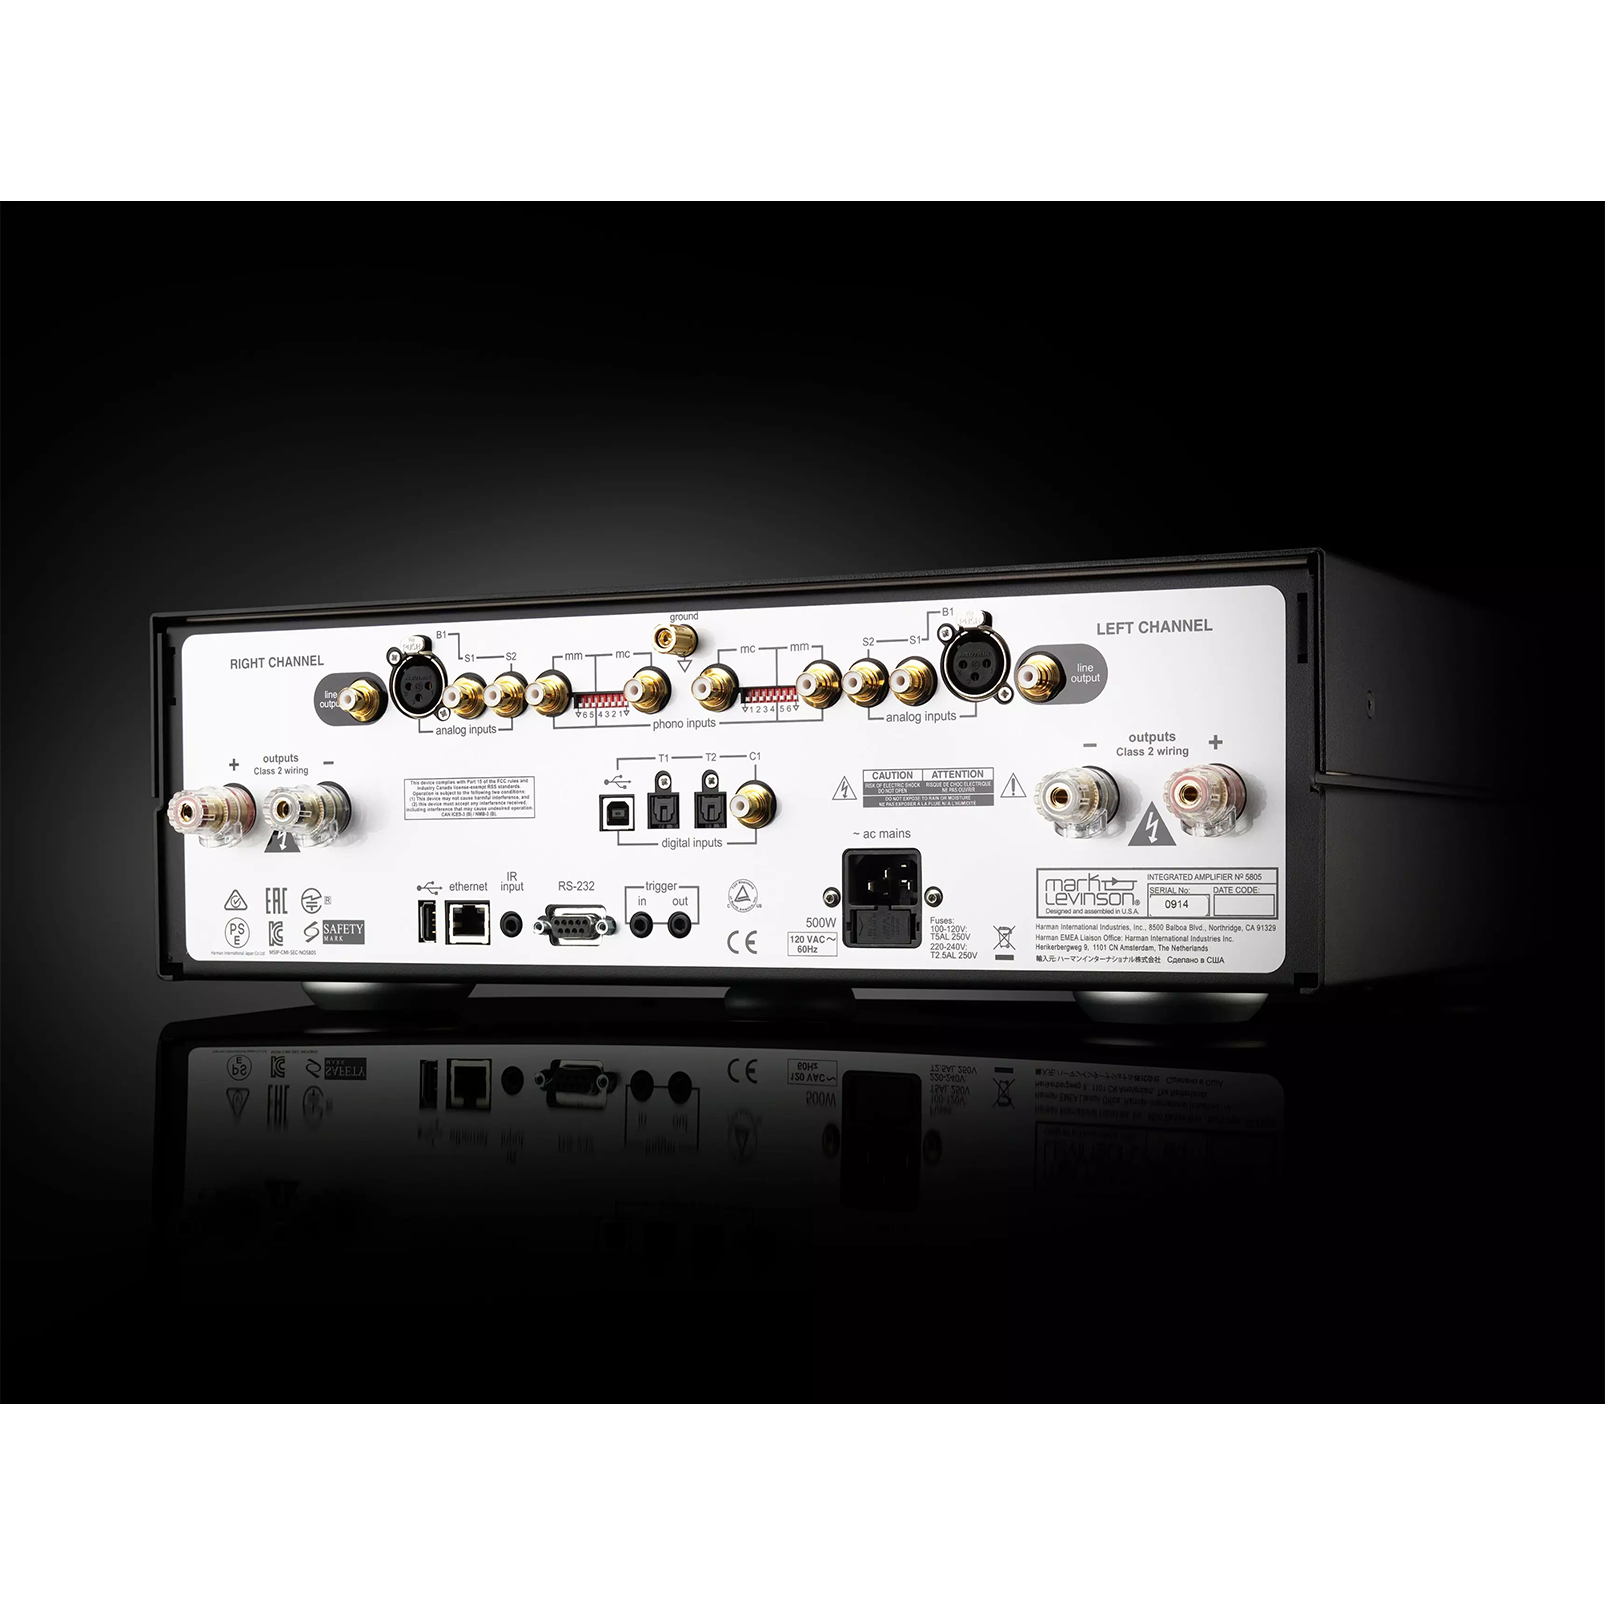 № 5805 - Black / Silver - Integrated Amplifier for Digital and Analog sources - Detailshot 4